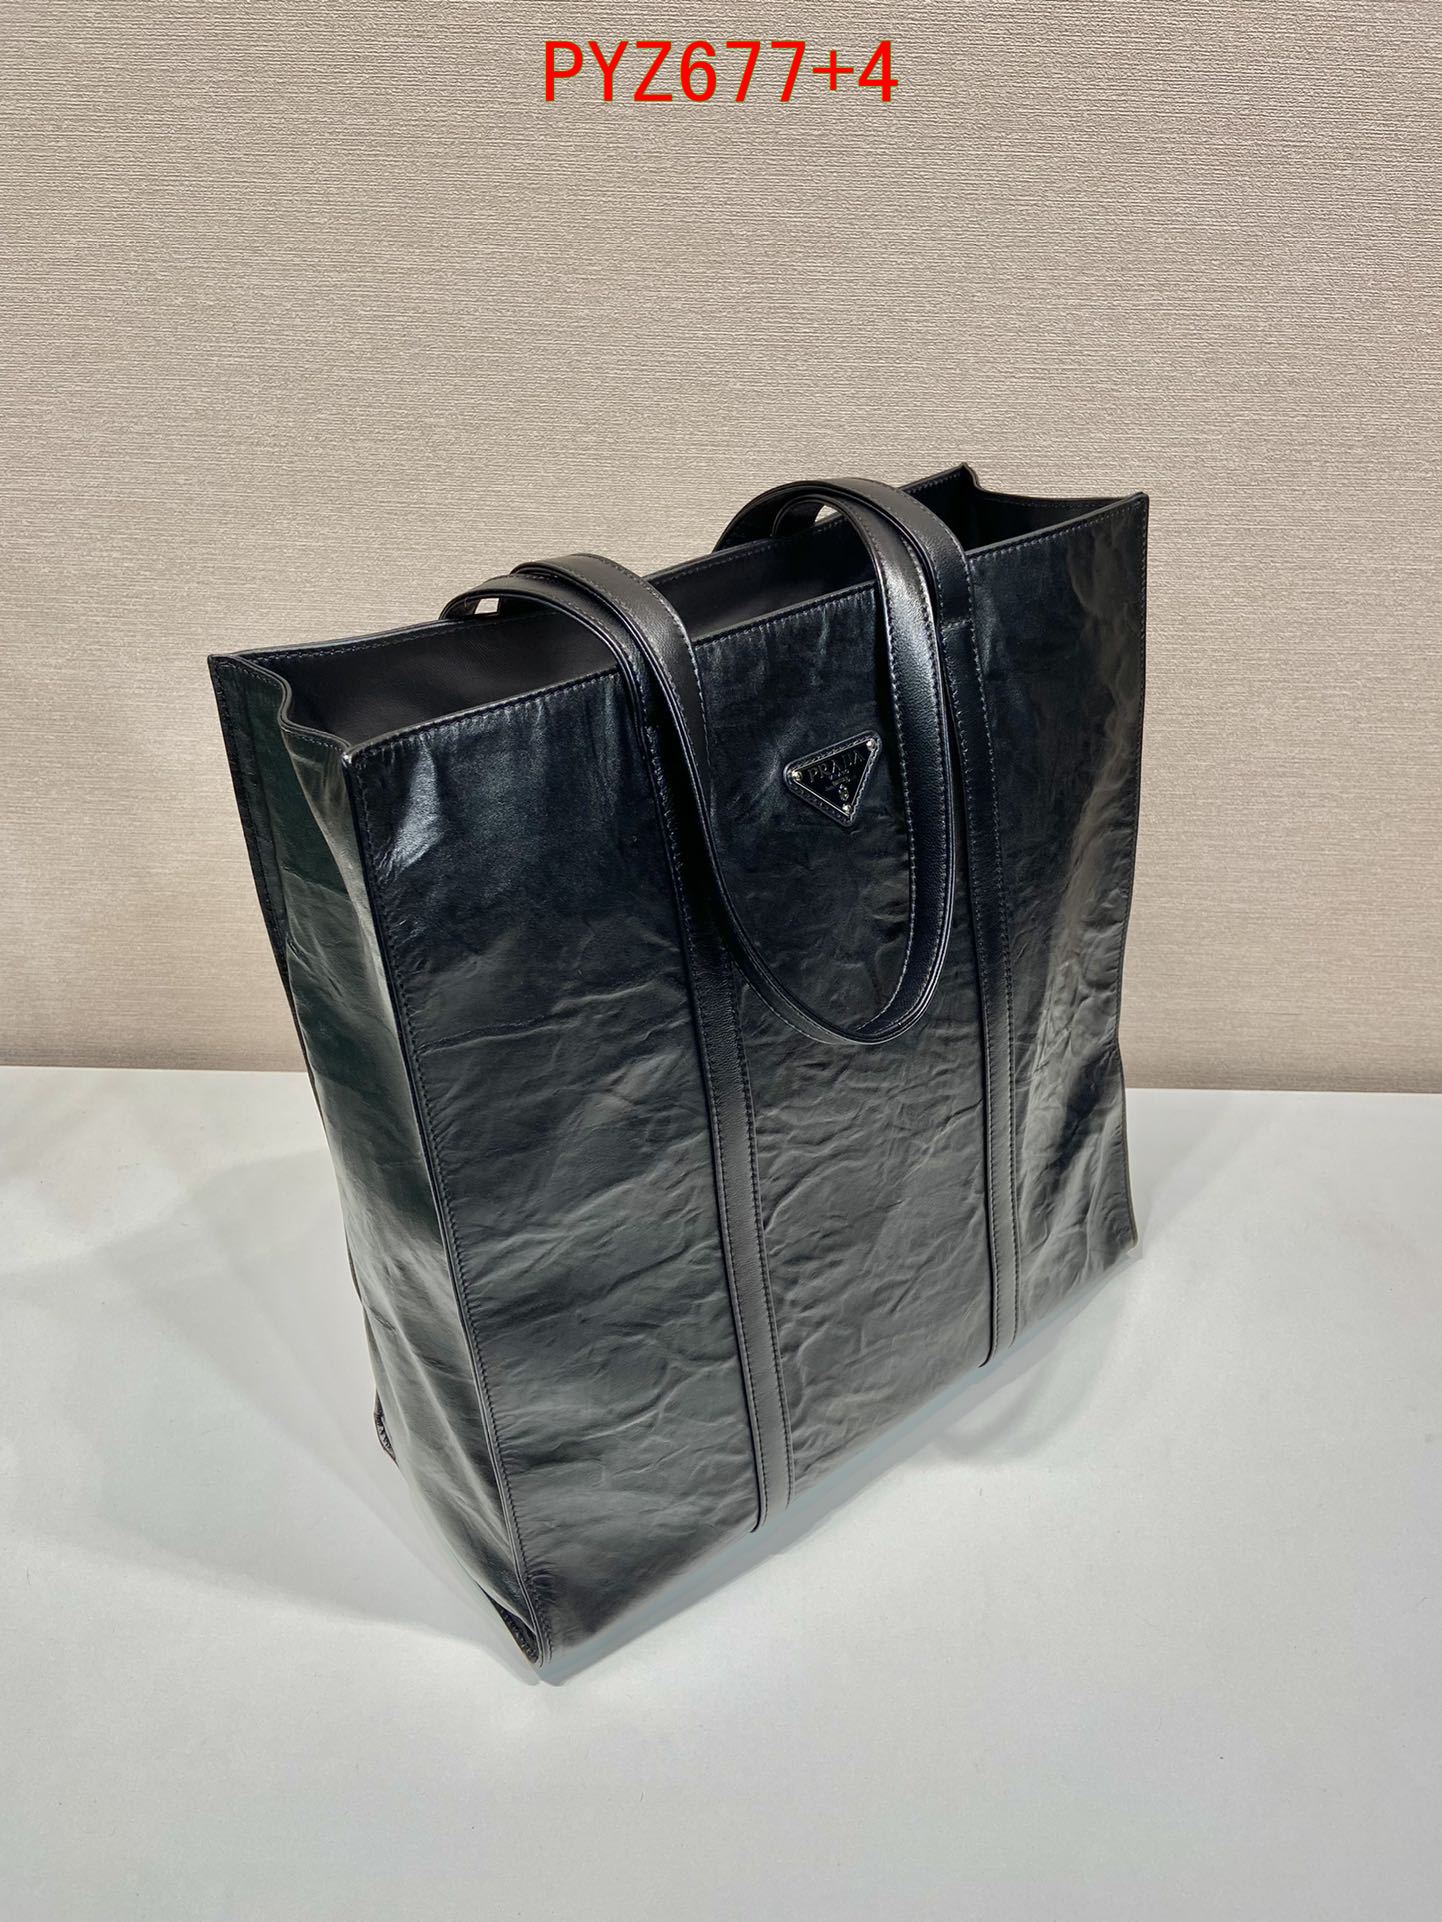 Prada Medium antique nappa leather tote bag